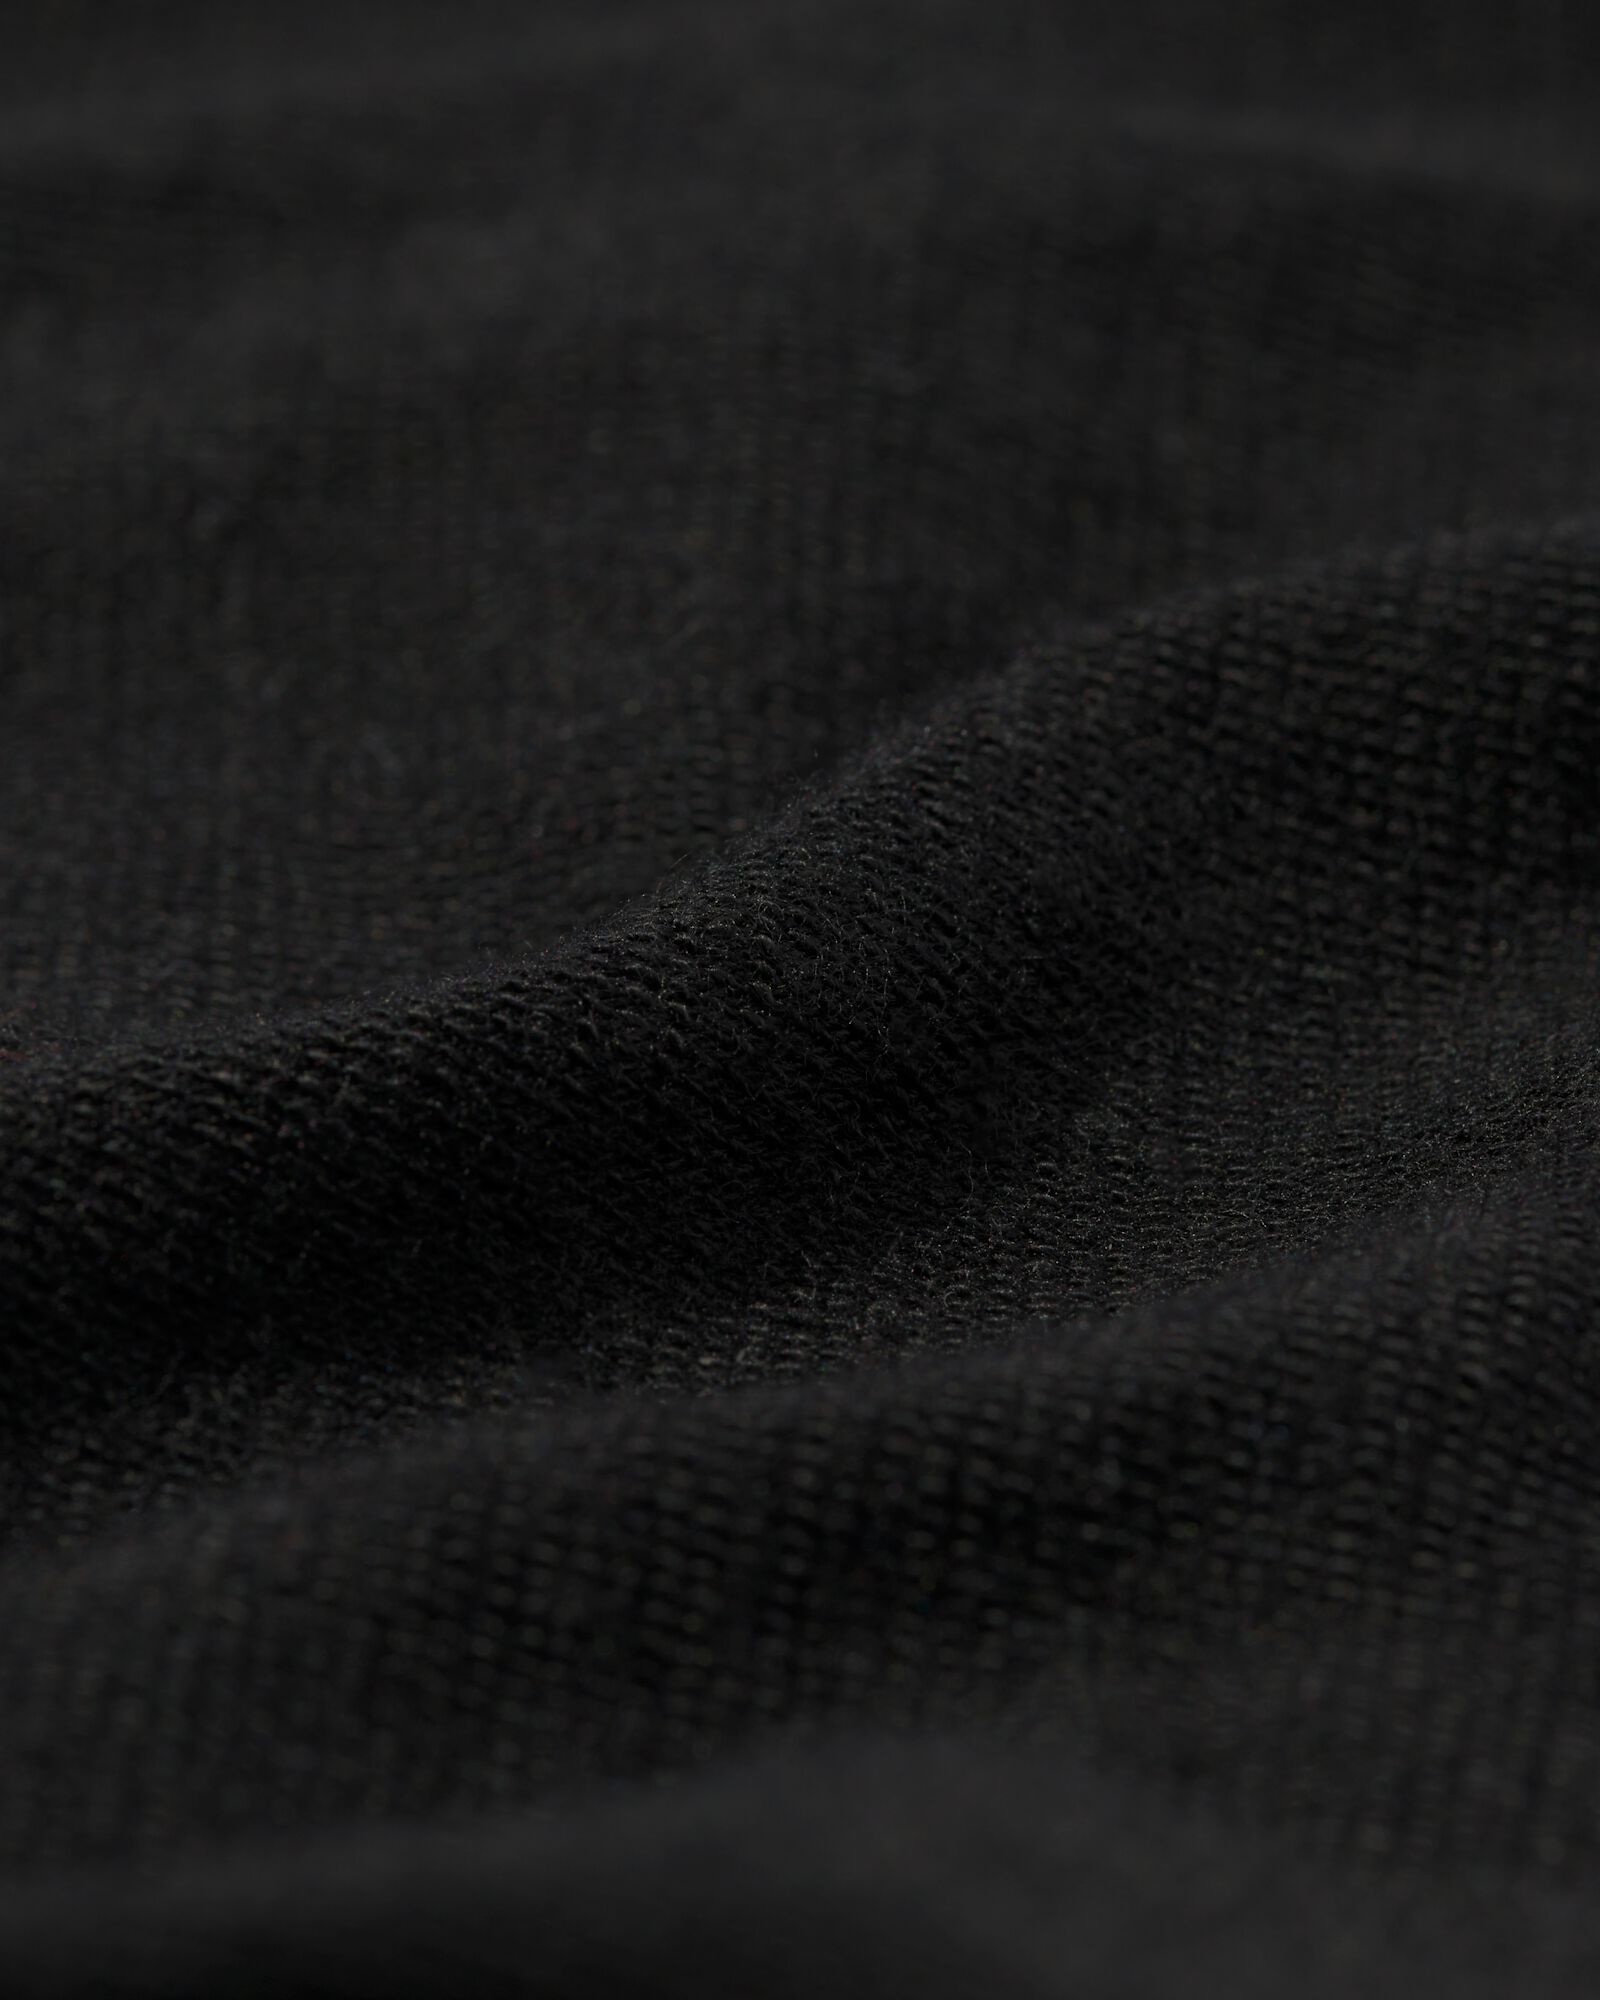 t-shirt thermique homme noir - HEMA